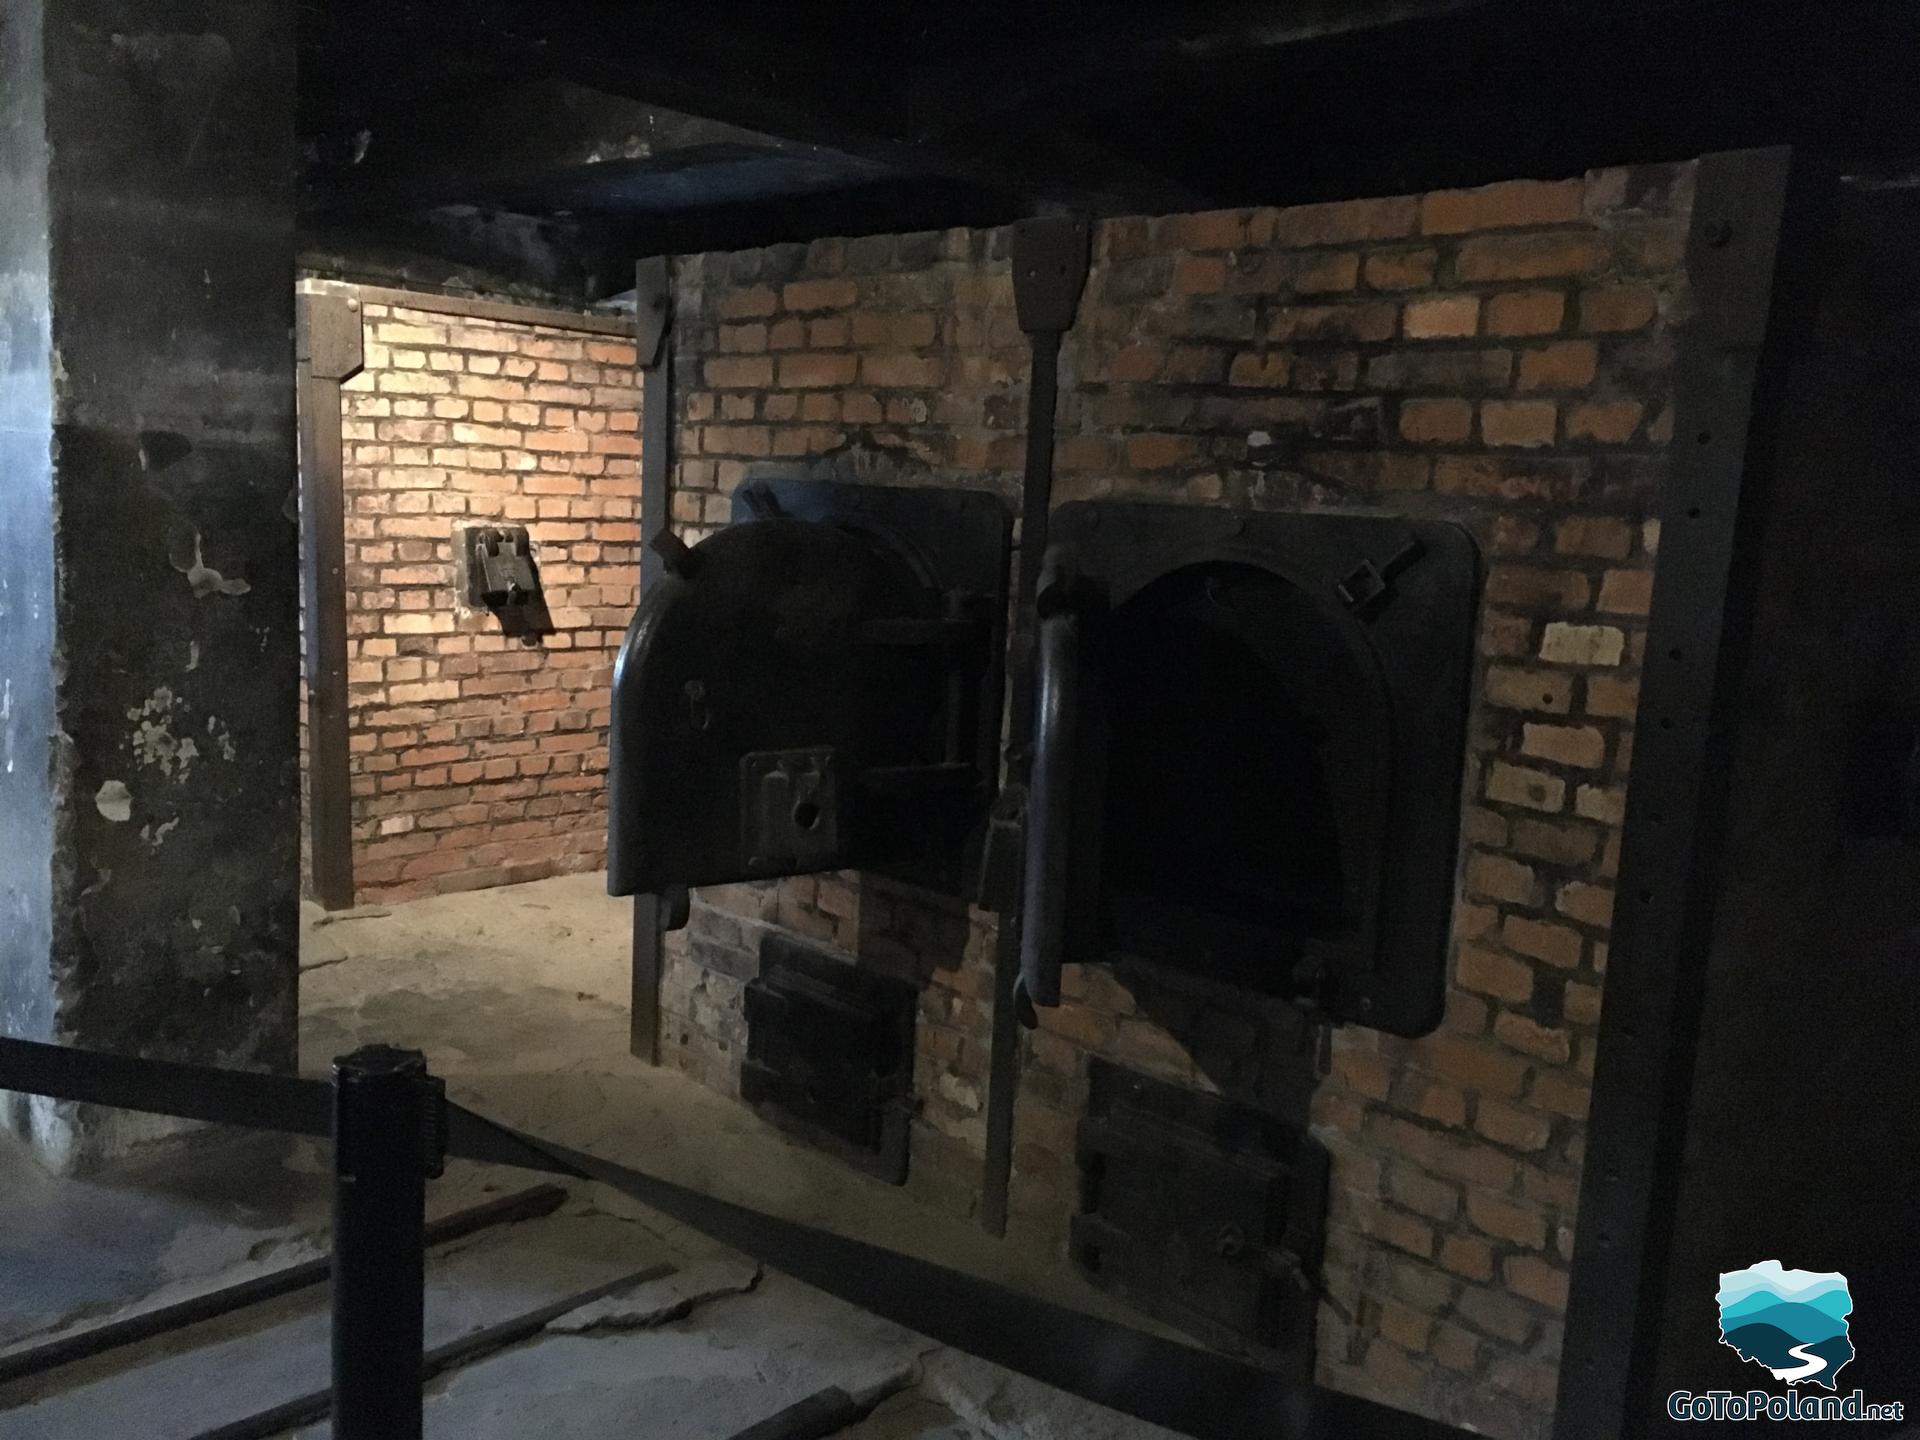 crematorium ovens